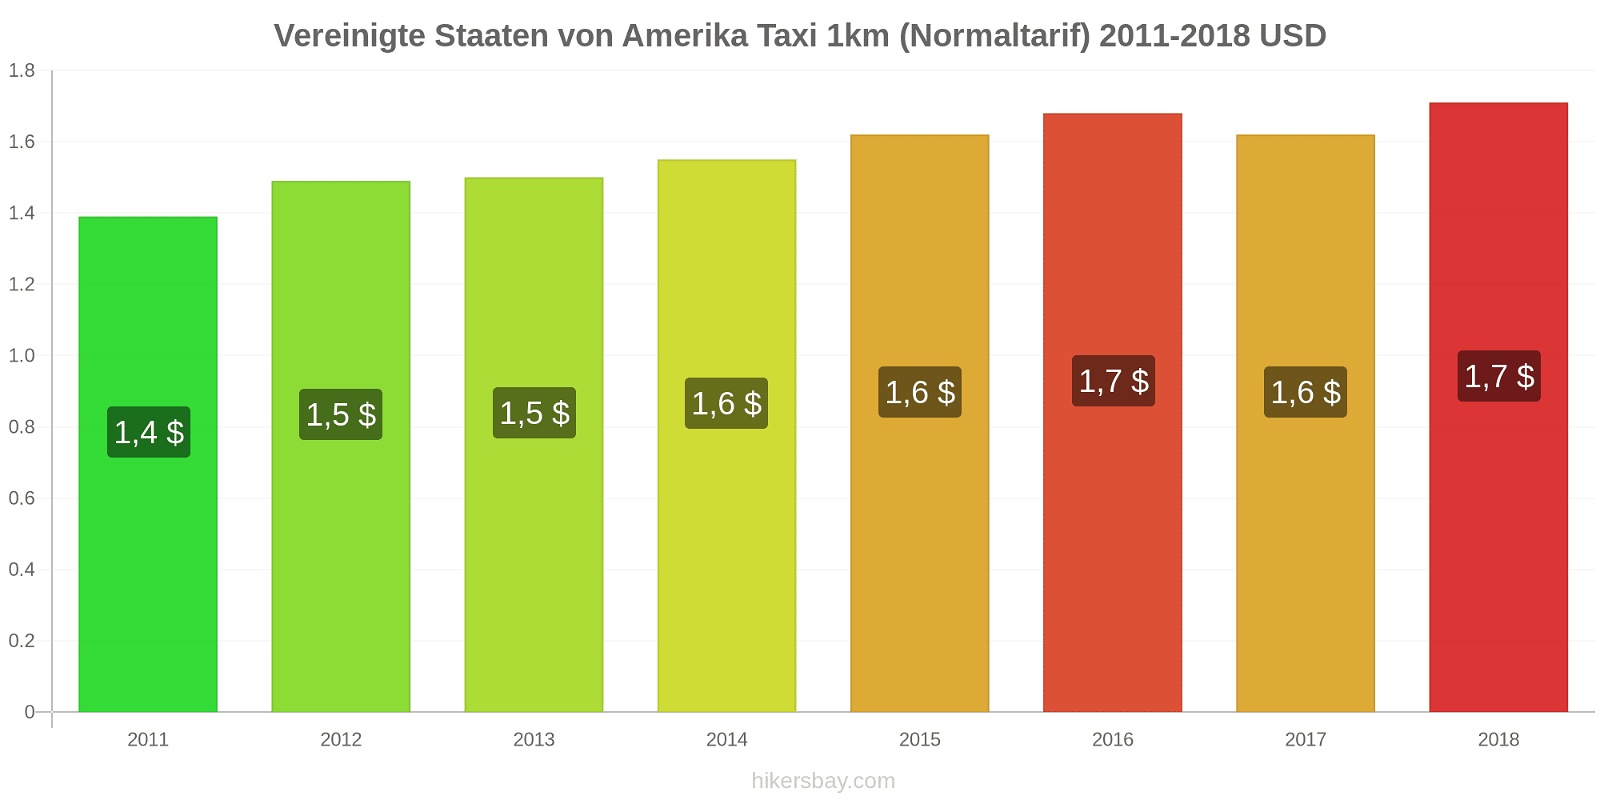 Vereinigte Staaten von Amerika Preisänderungen Taxi 1km (Normaltarif) hikersbay.com